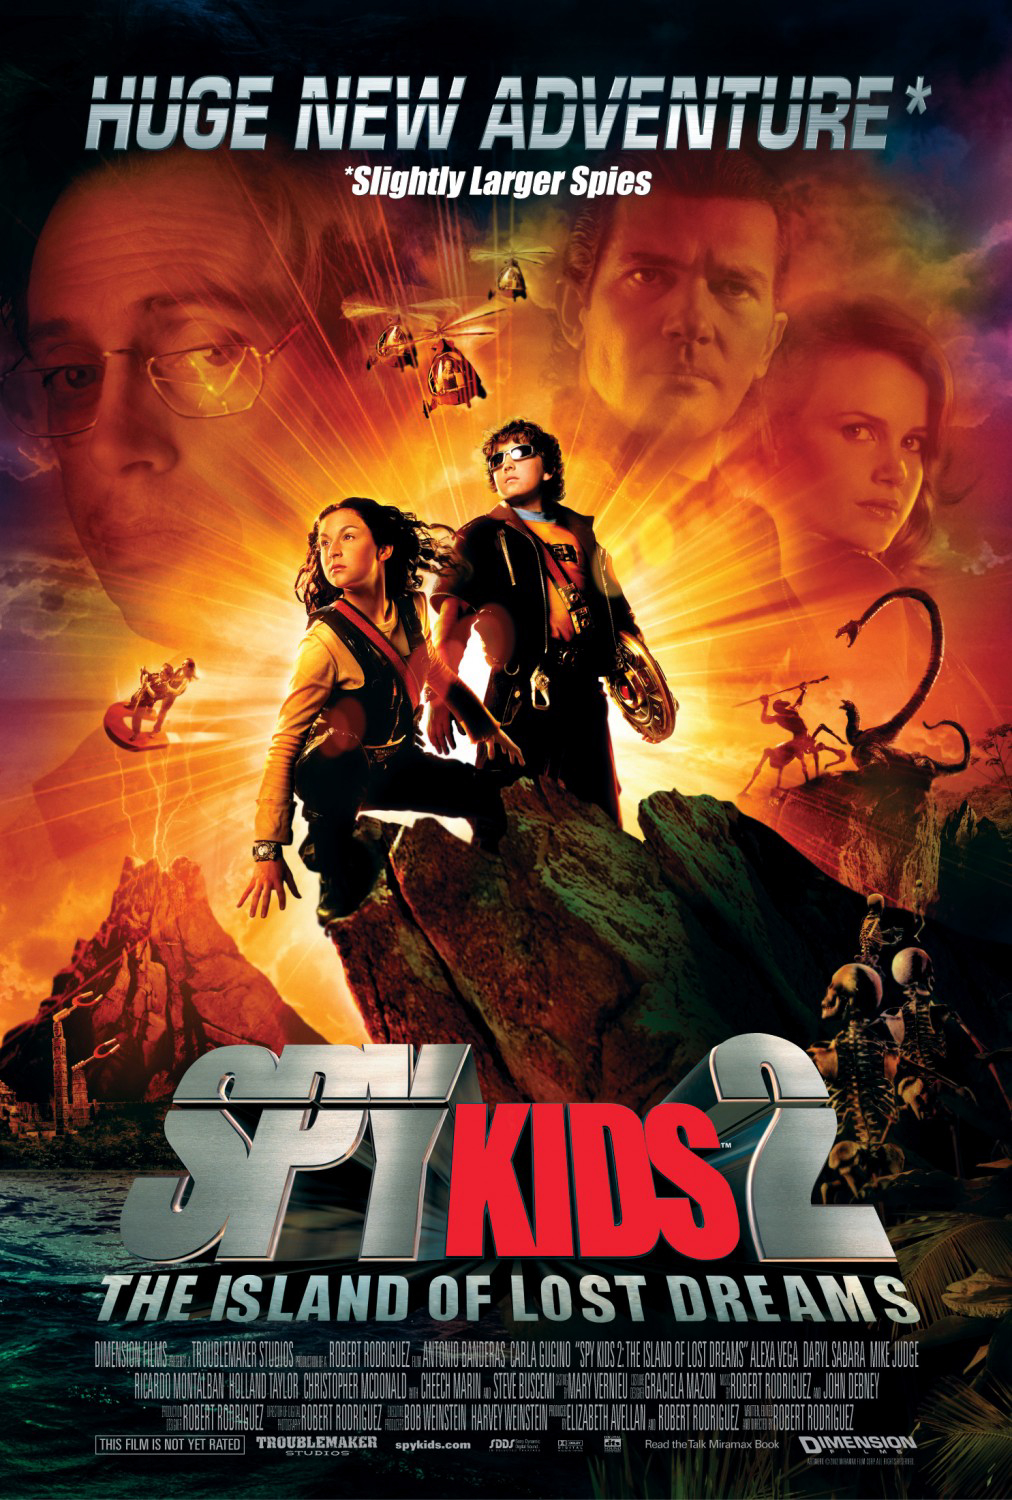 Poster Phim Điệp Viên Nhí 2: Đảo Của Những Giấc Mơ Đã Mất (Spy Kids 2: Island of Lost Dreams)